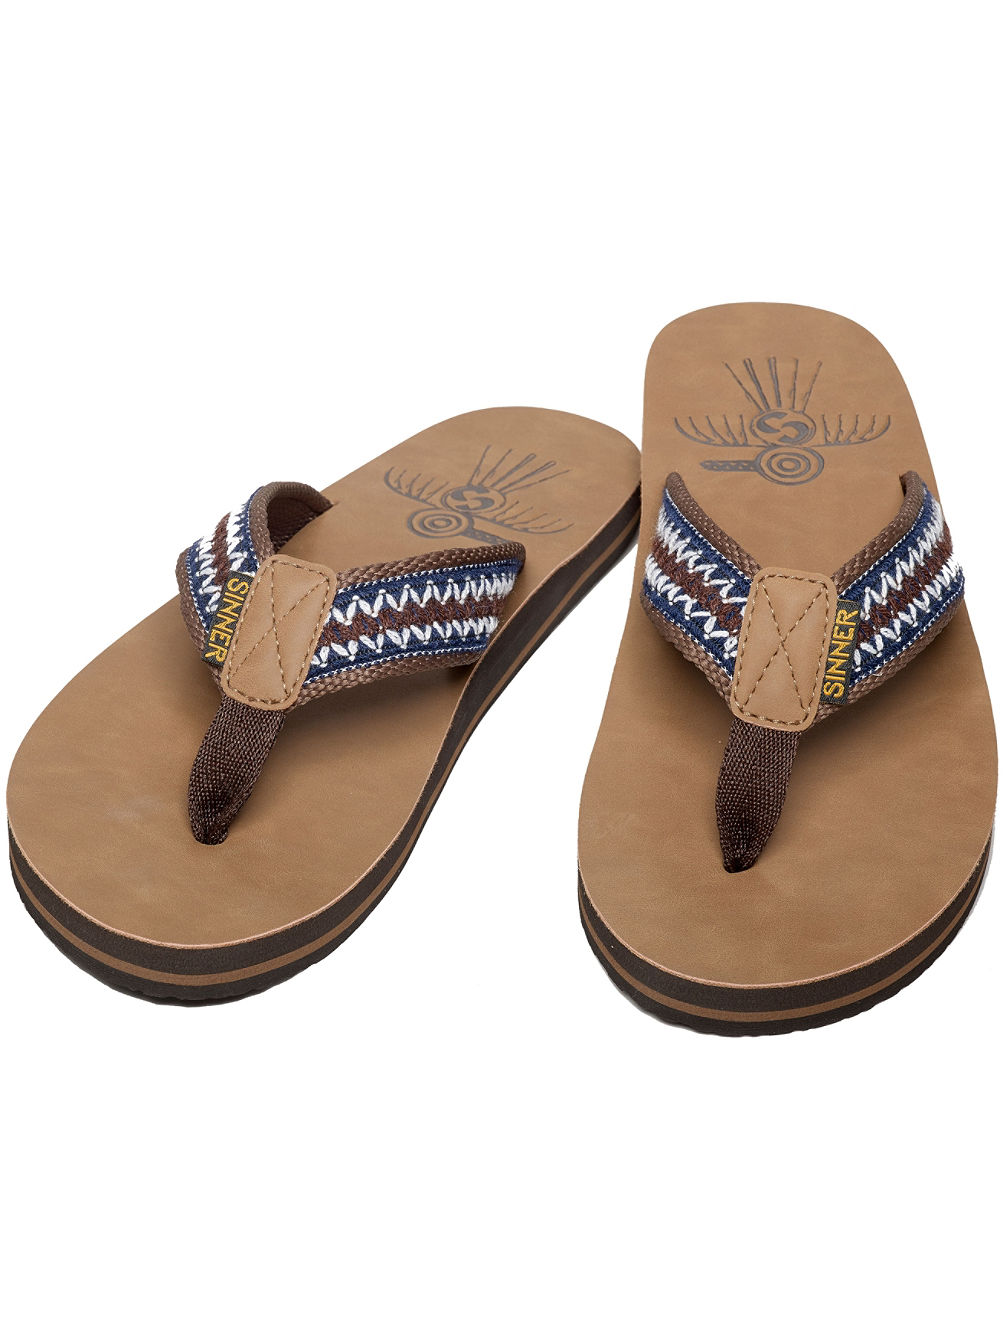 Unawatuna Sandals